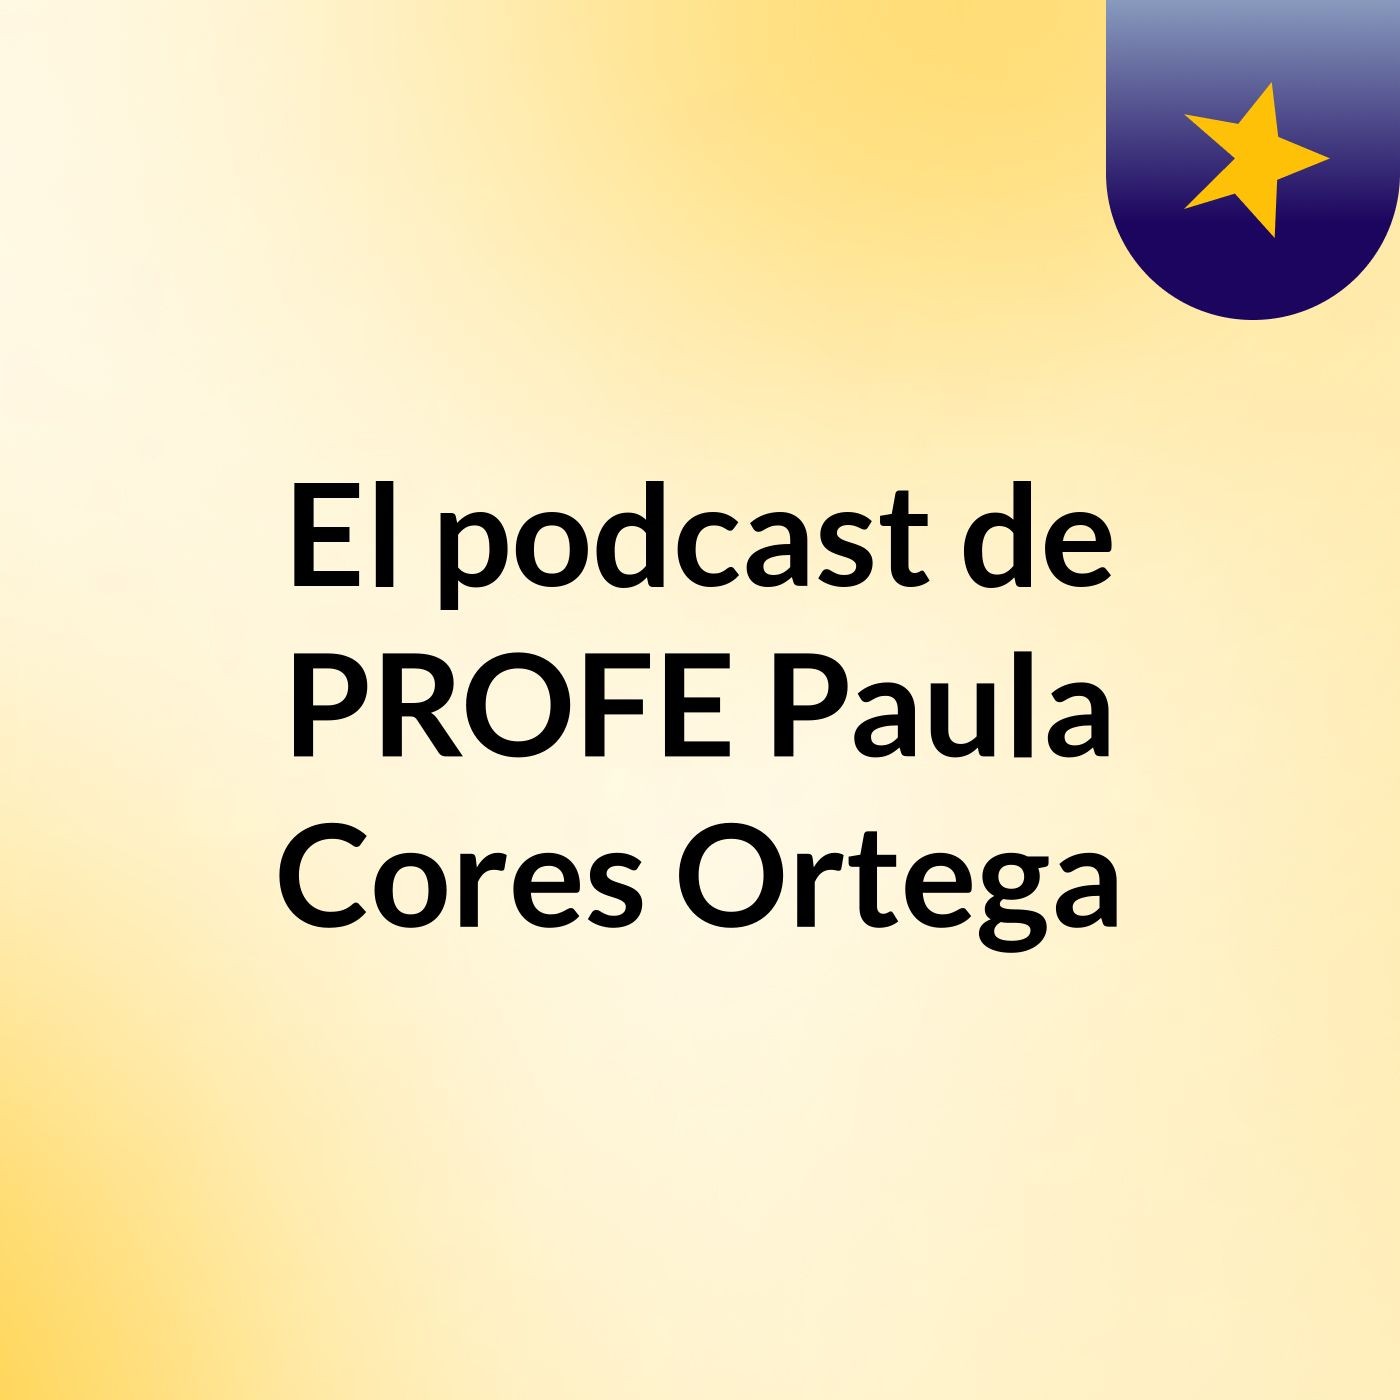 El podcast de PROFE Paula Cores Ortega